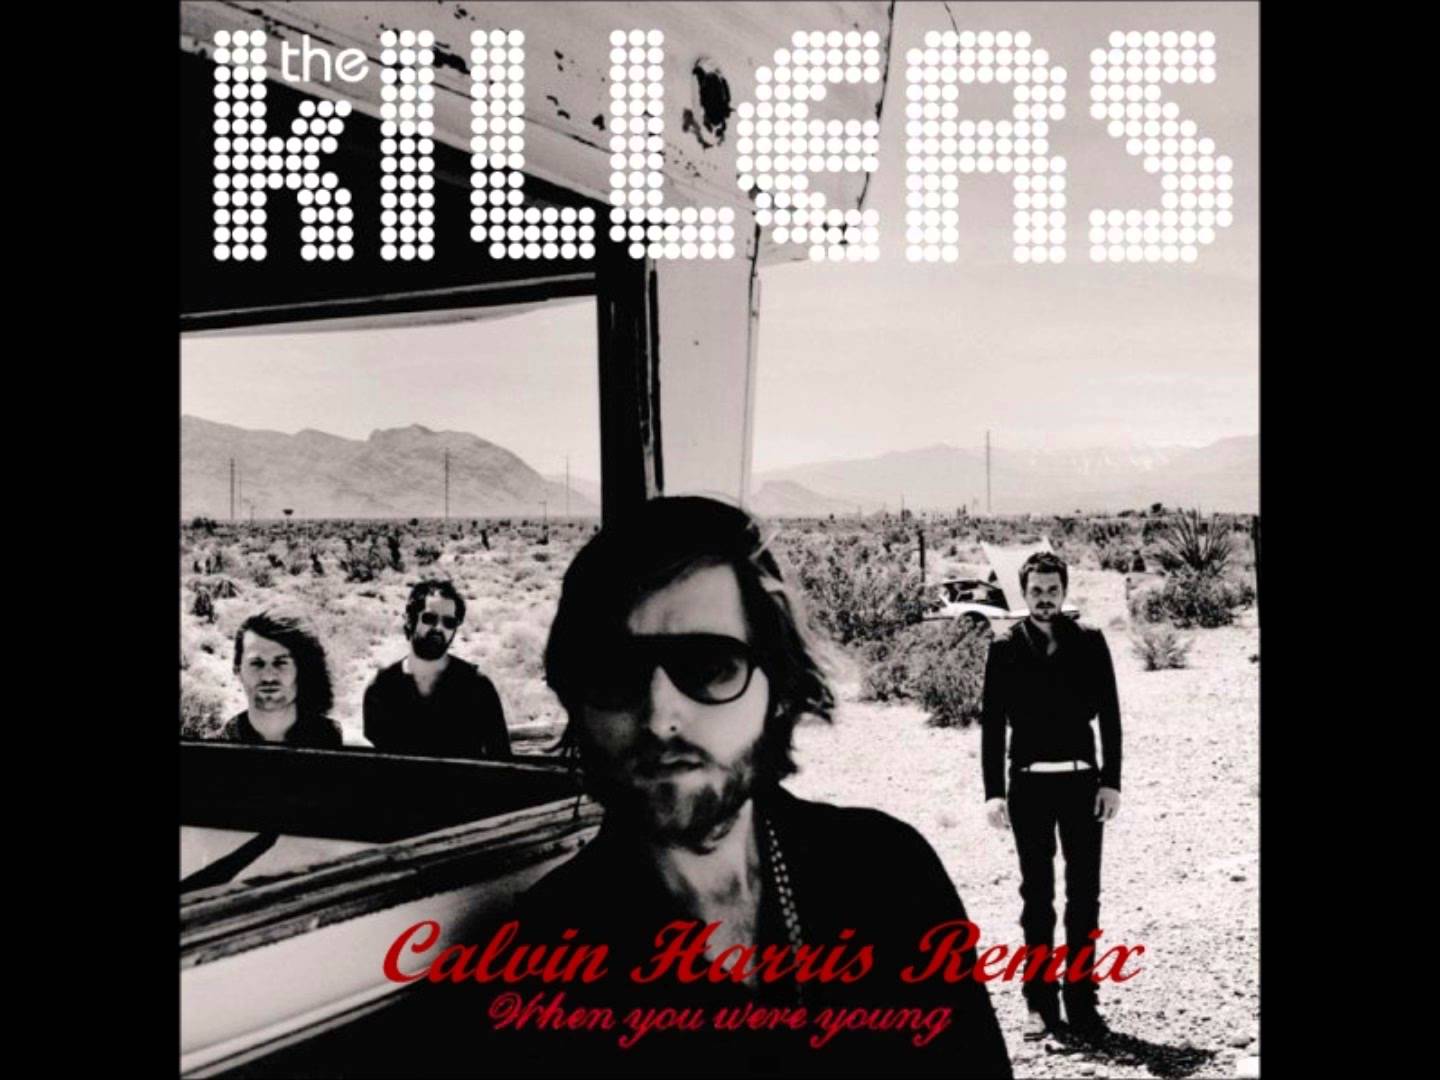 Killers lyrics